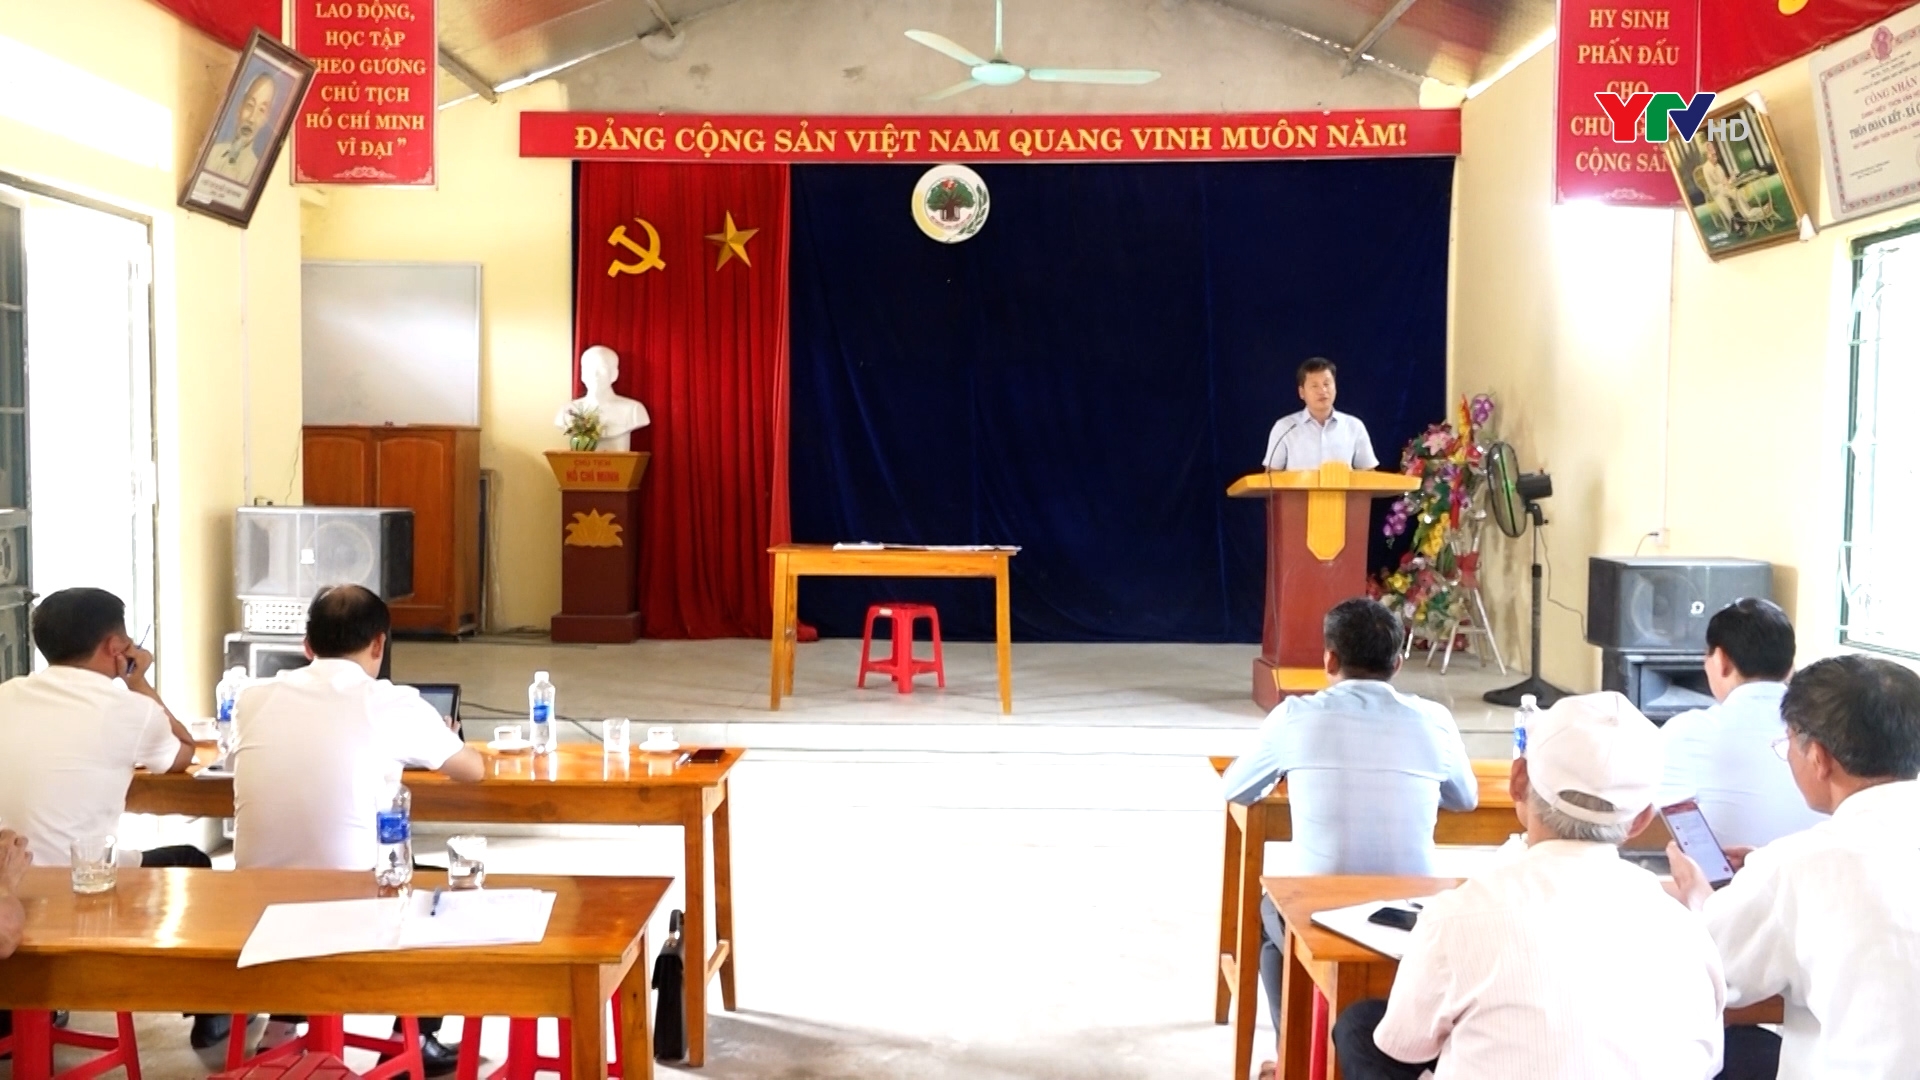 Đồng chí Phó Chủ tịch UBND tỉnh Ngô Hạnh Phúc dự sinh hoạt tại Chi bộ thôn Đoàn Kết, xã Cảm Ân, huyện Yên Bình